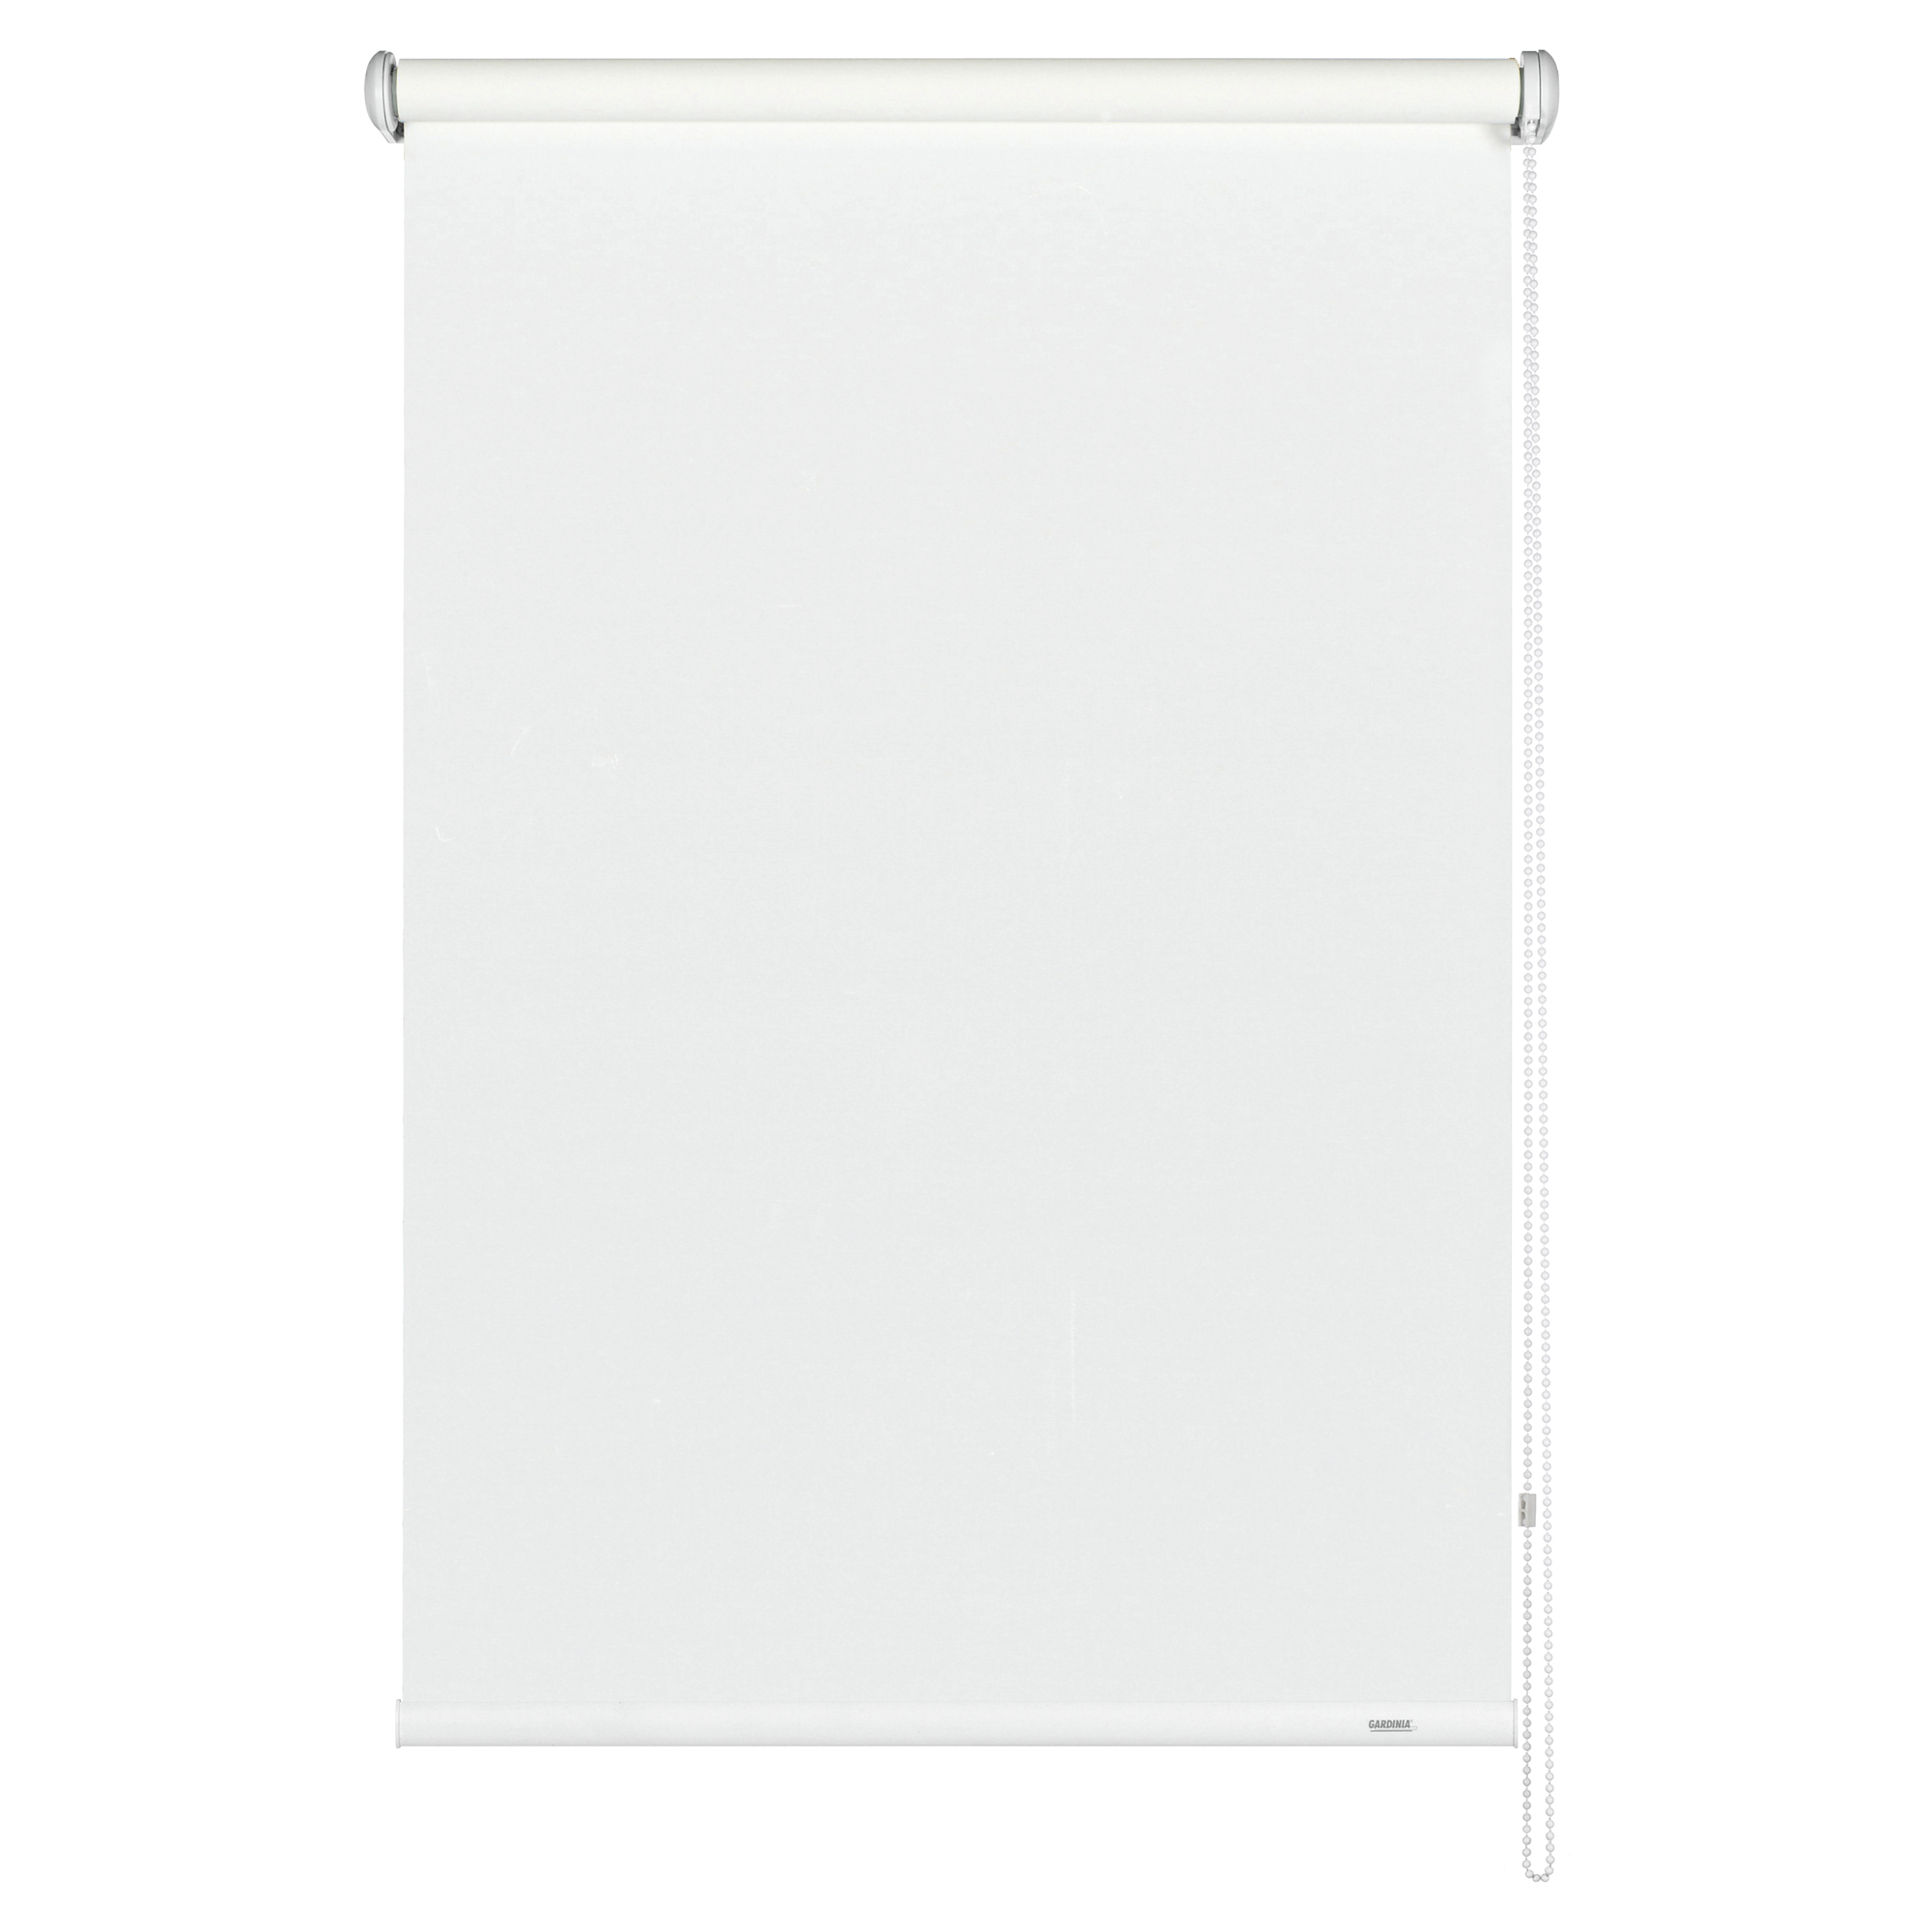 Seitenzug-Rollo 'Lichtdurchlässig' weiß 82 x 180 cm + product picture